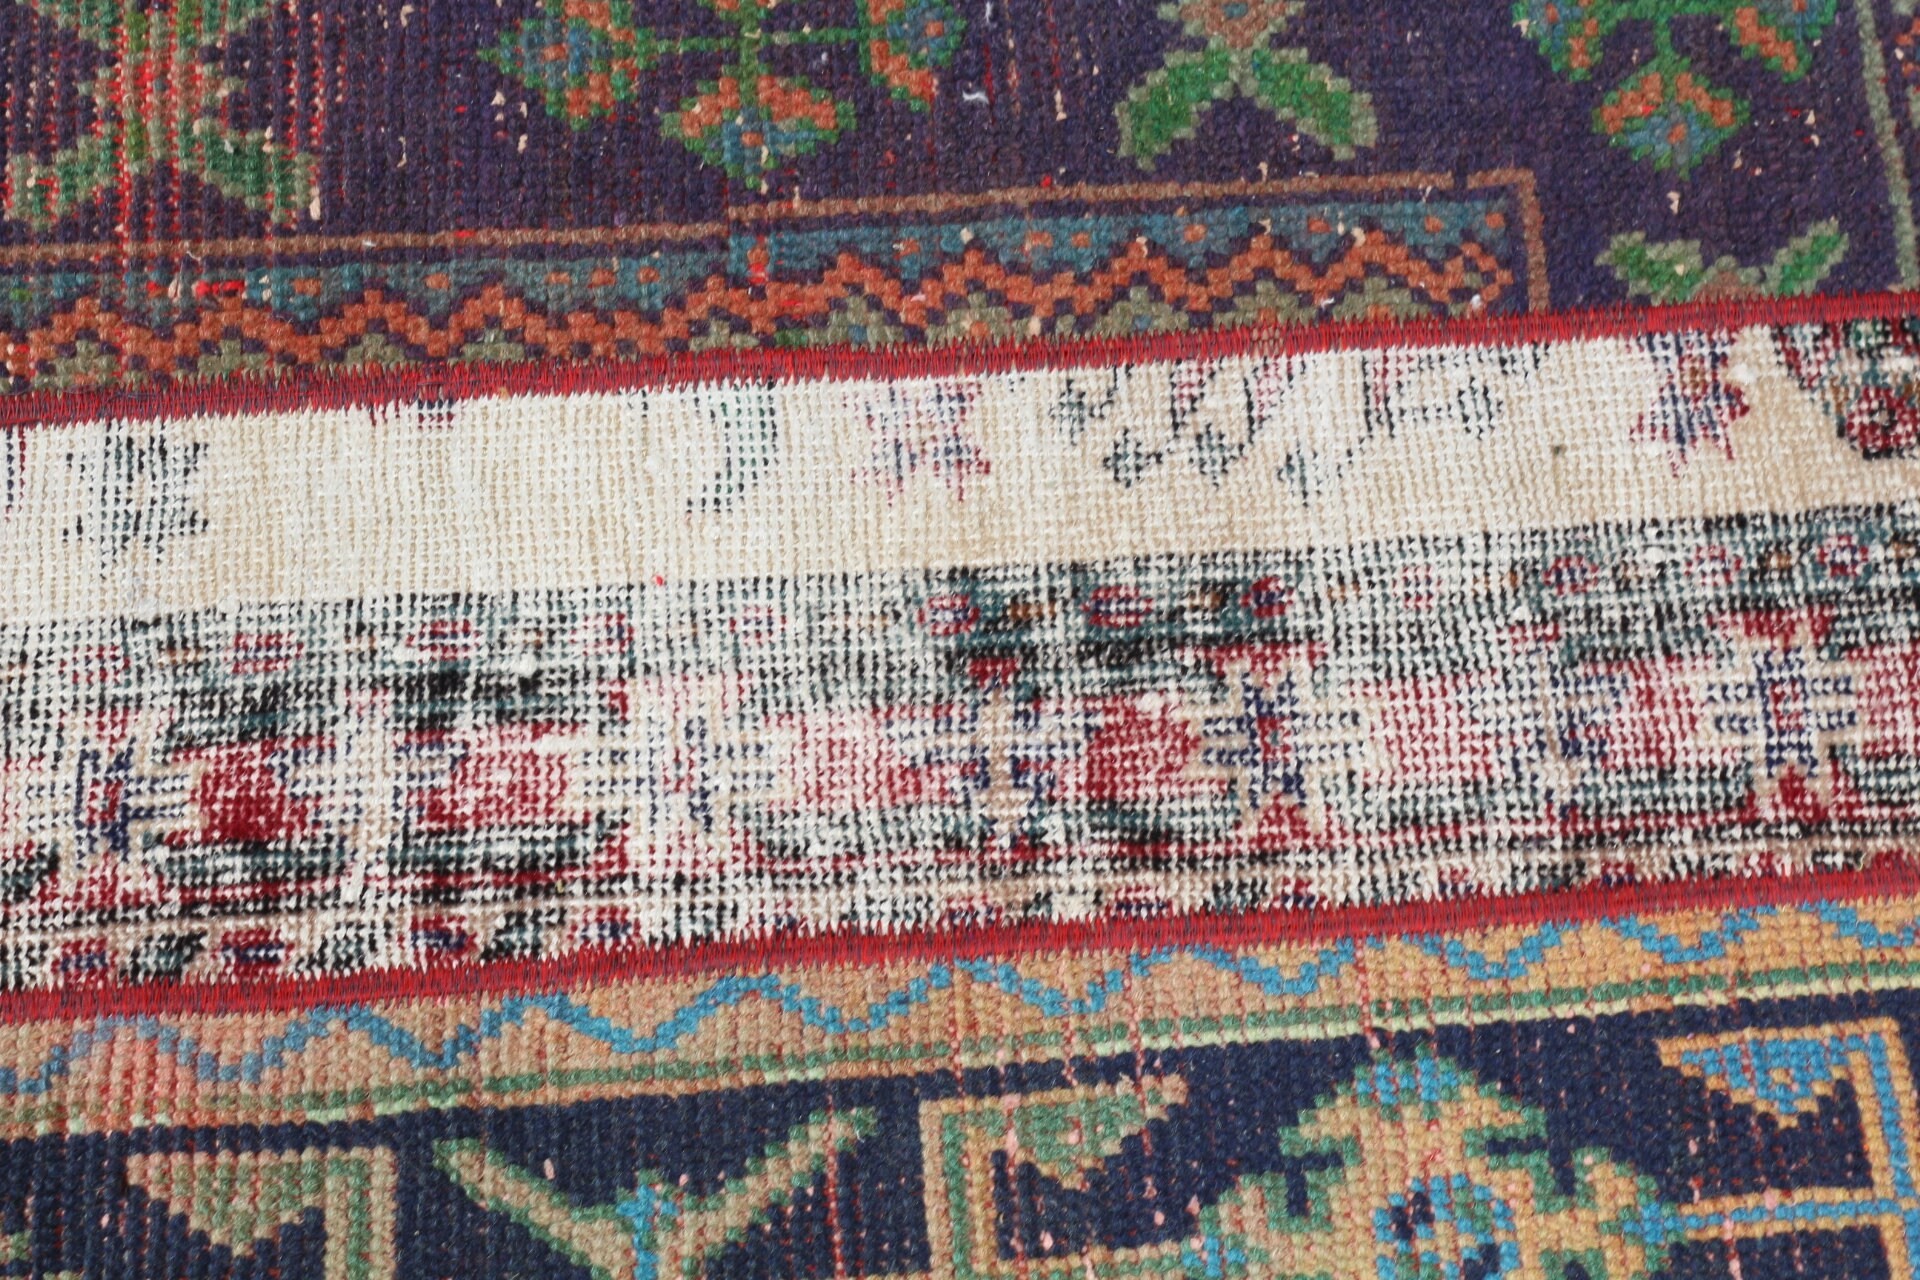 Wall Hanging Rugs, Turkey Rug, Moroccan Rugs, Turkish Rugs, 2.1x2.5 ft Small Rugs, Vintage Rug, Entry Rugs, Blue Bedroom Rugs, Oriental Rug